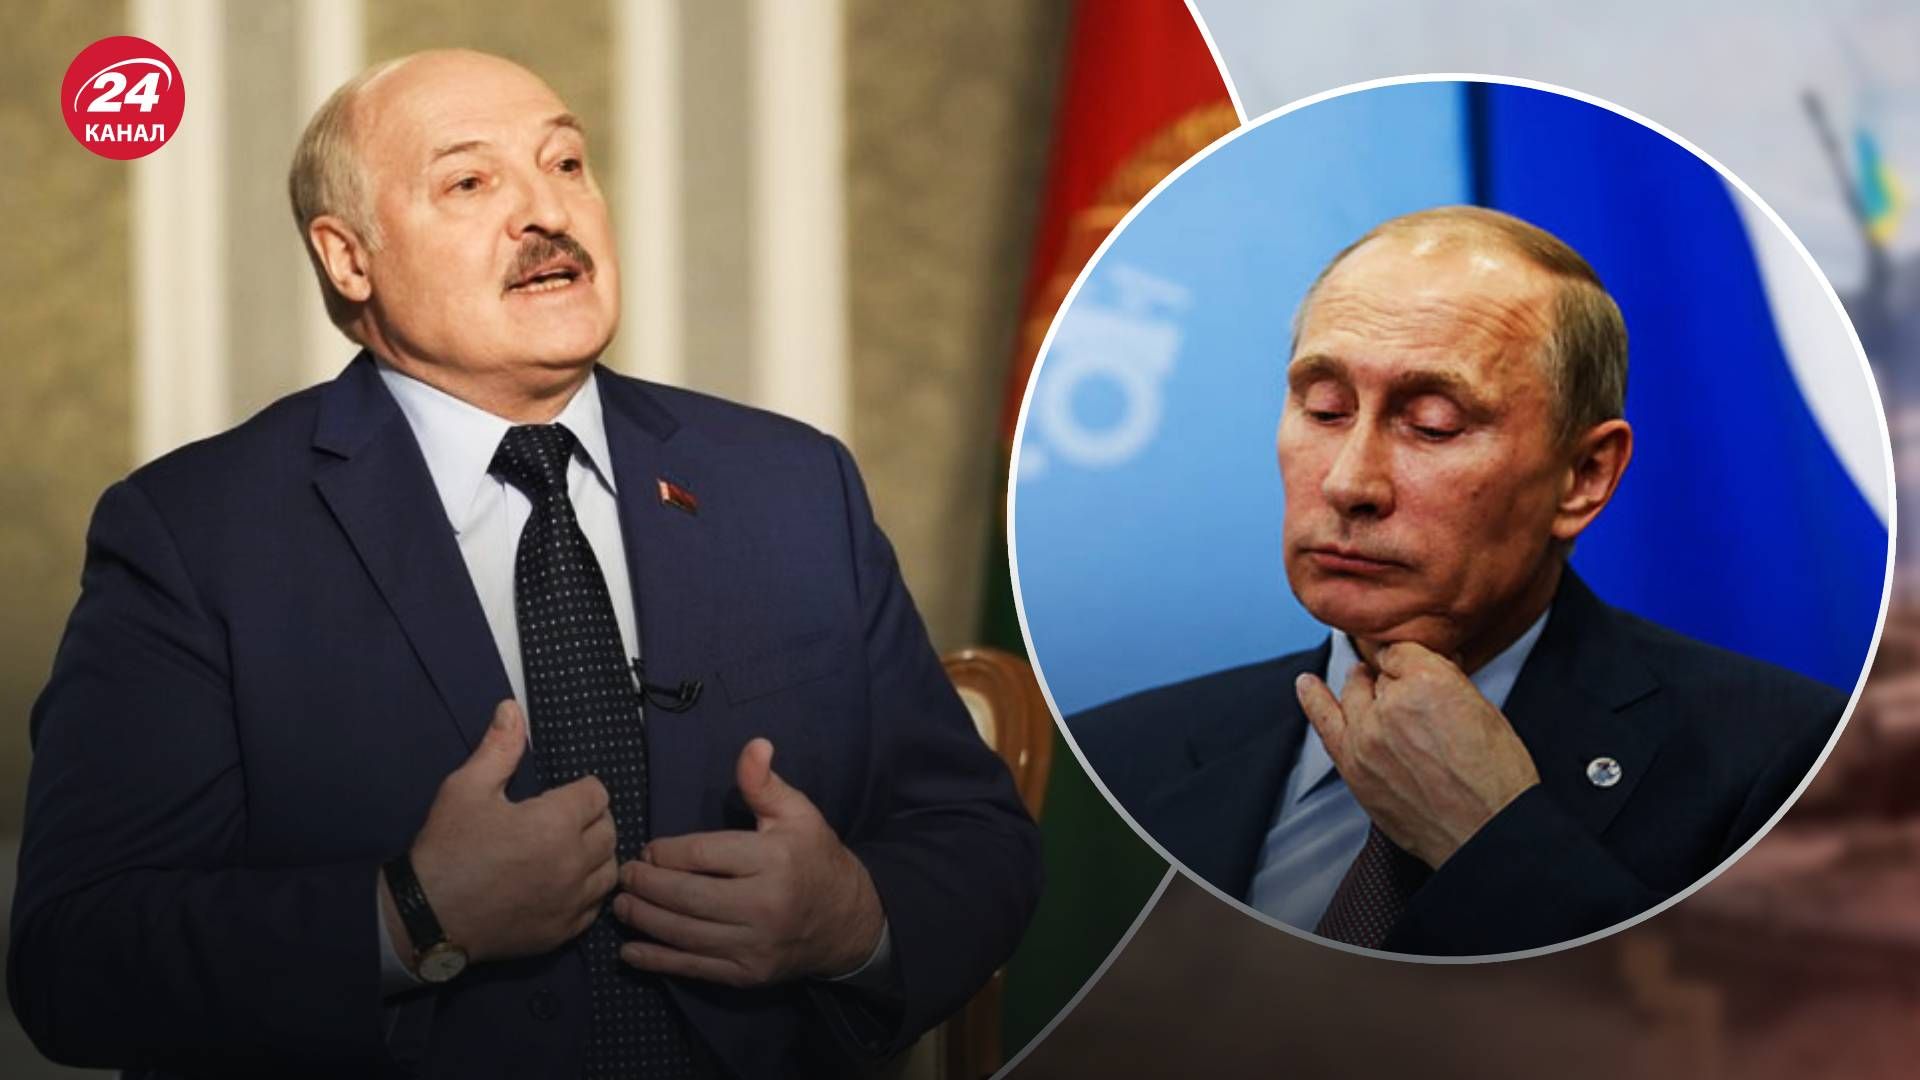 Пригожин мятеж – какова цель Лукашенко в переговорах с Пригожиным